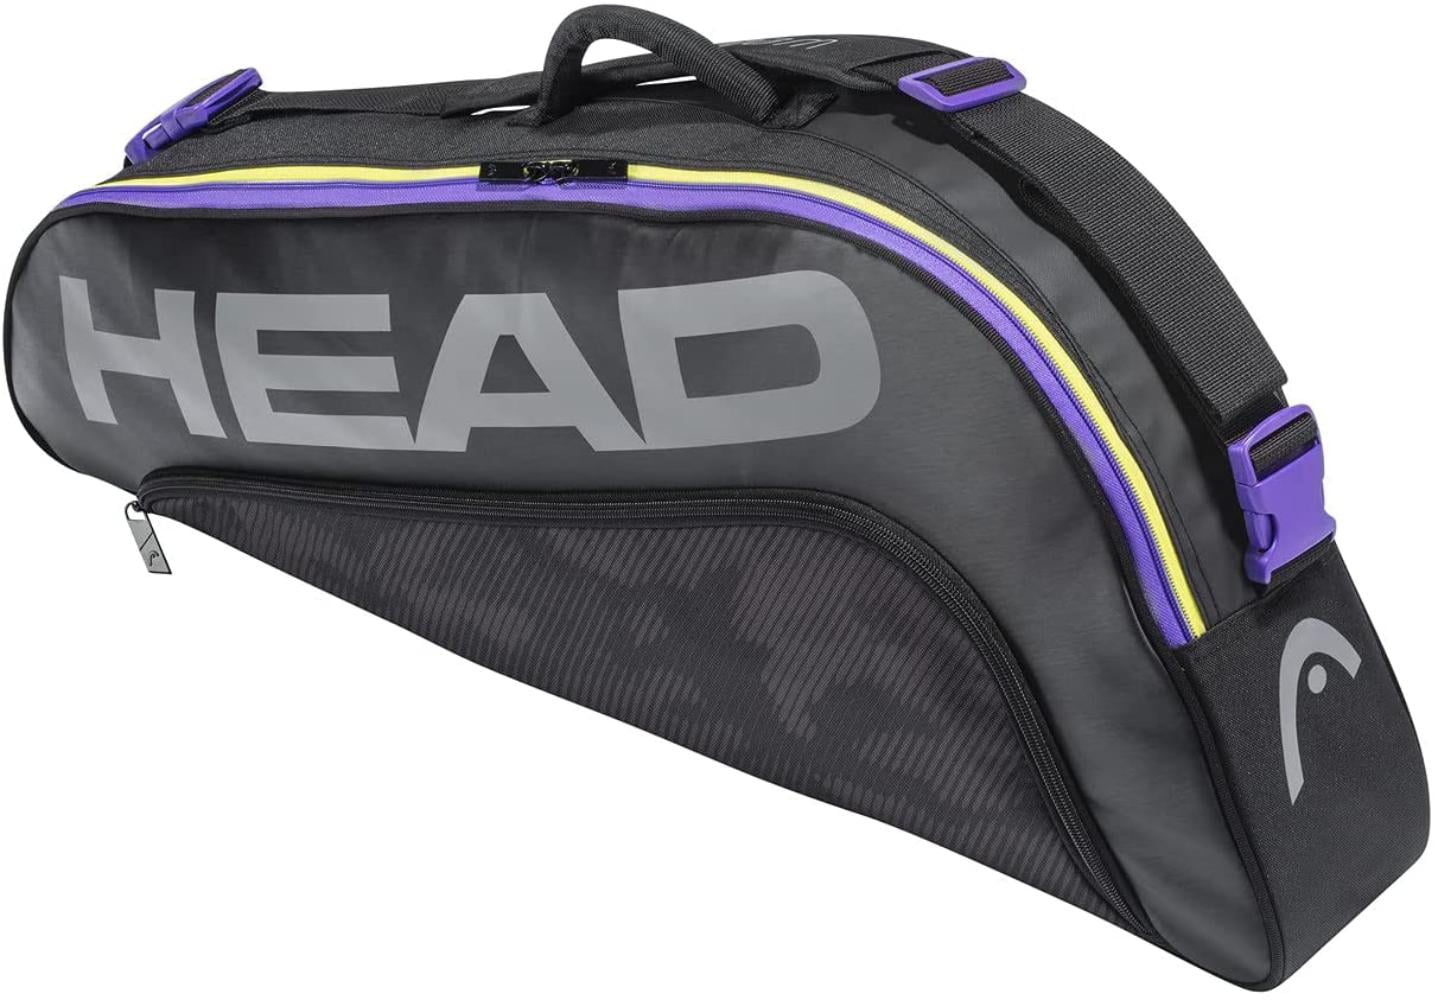 HEAD Core Pro 3 racquet racket tennis bag Authorized Dealer Black 